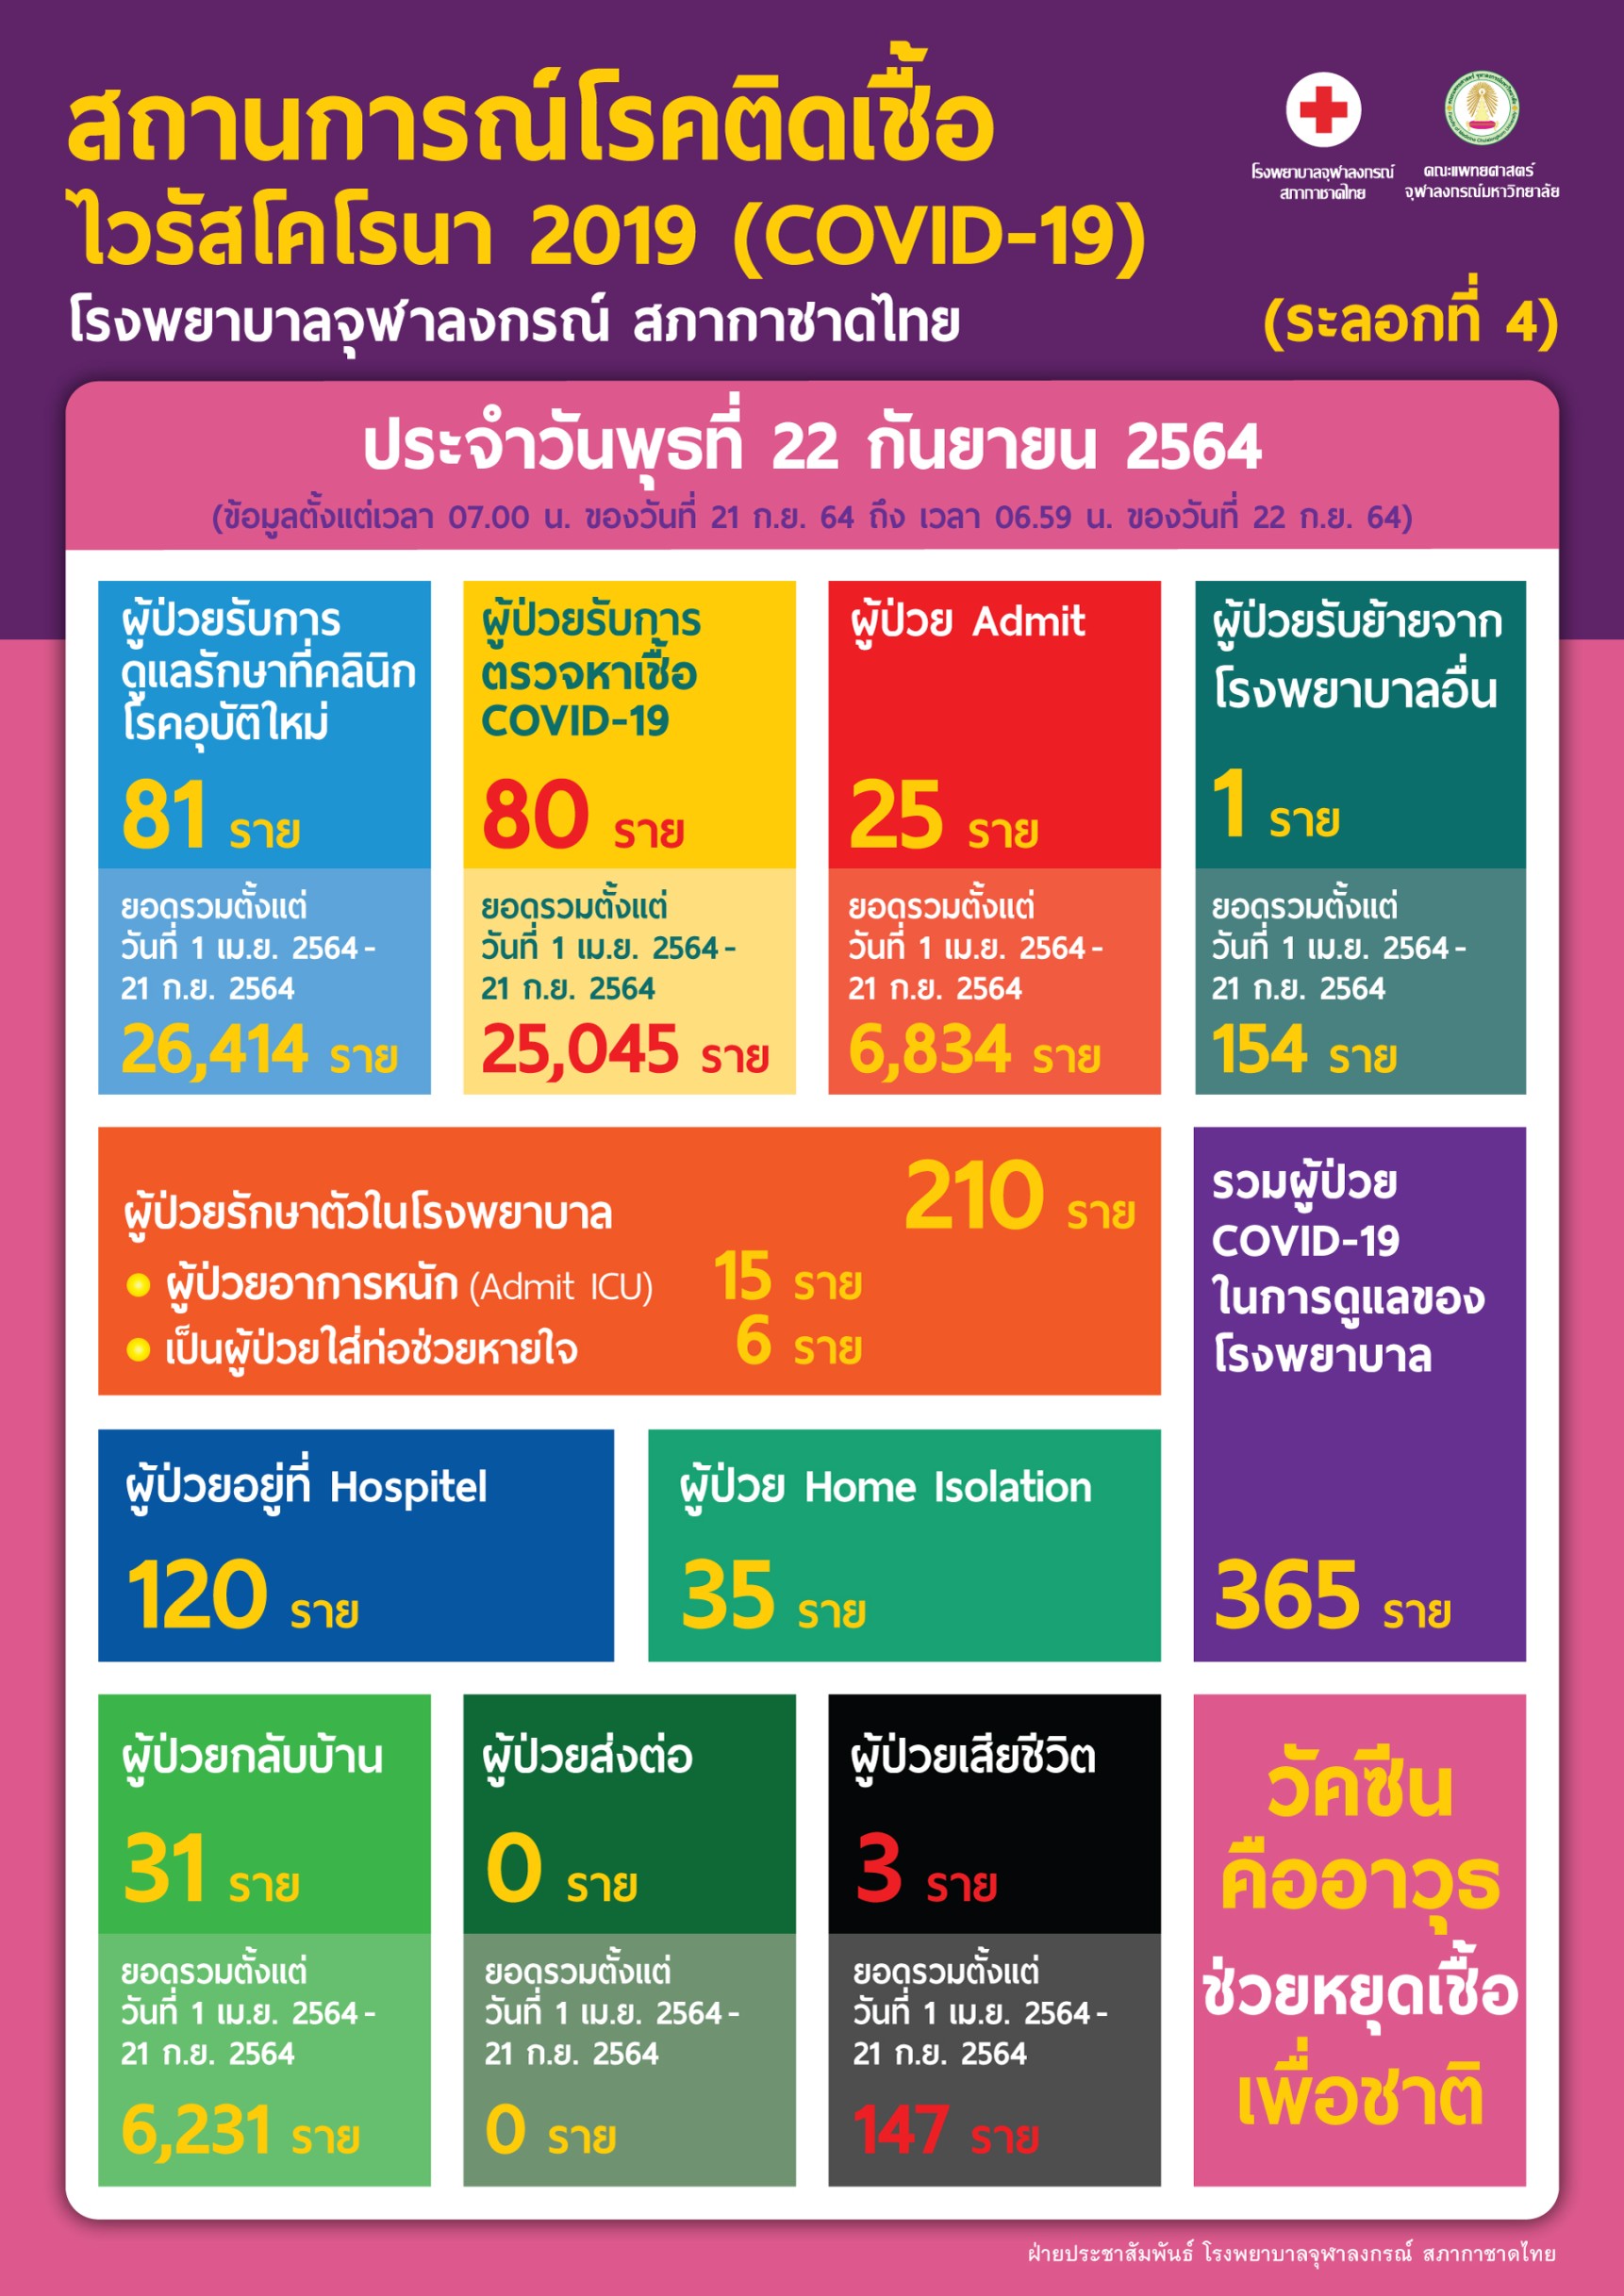 สถานการณ์โรคติดเชื้อไวรัสโคโรนา 2019 (COVID-19) (ระลอกที่ 4) โรงพยาบาลจุฬาลงกรณ์ สภากาชาดไทย  ประจำวันพุธที่ 22 กันยายน 2564